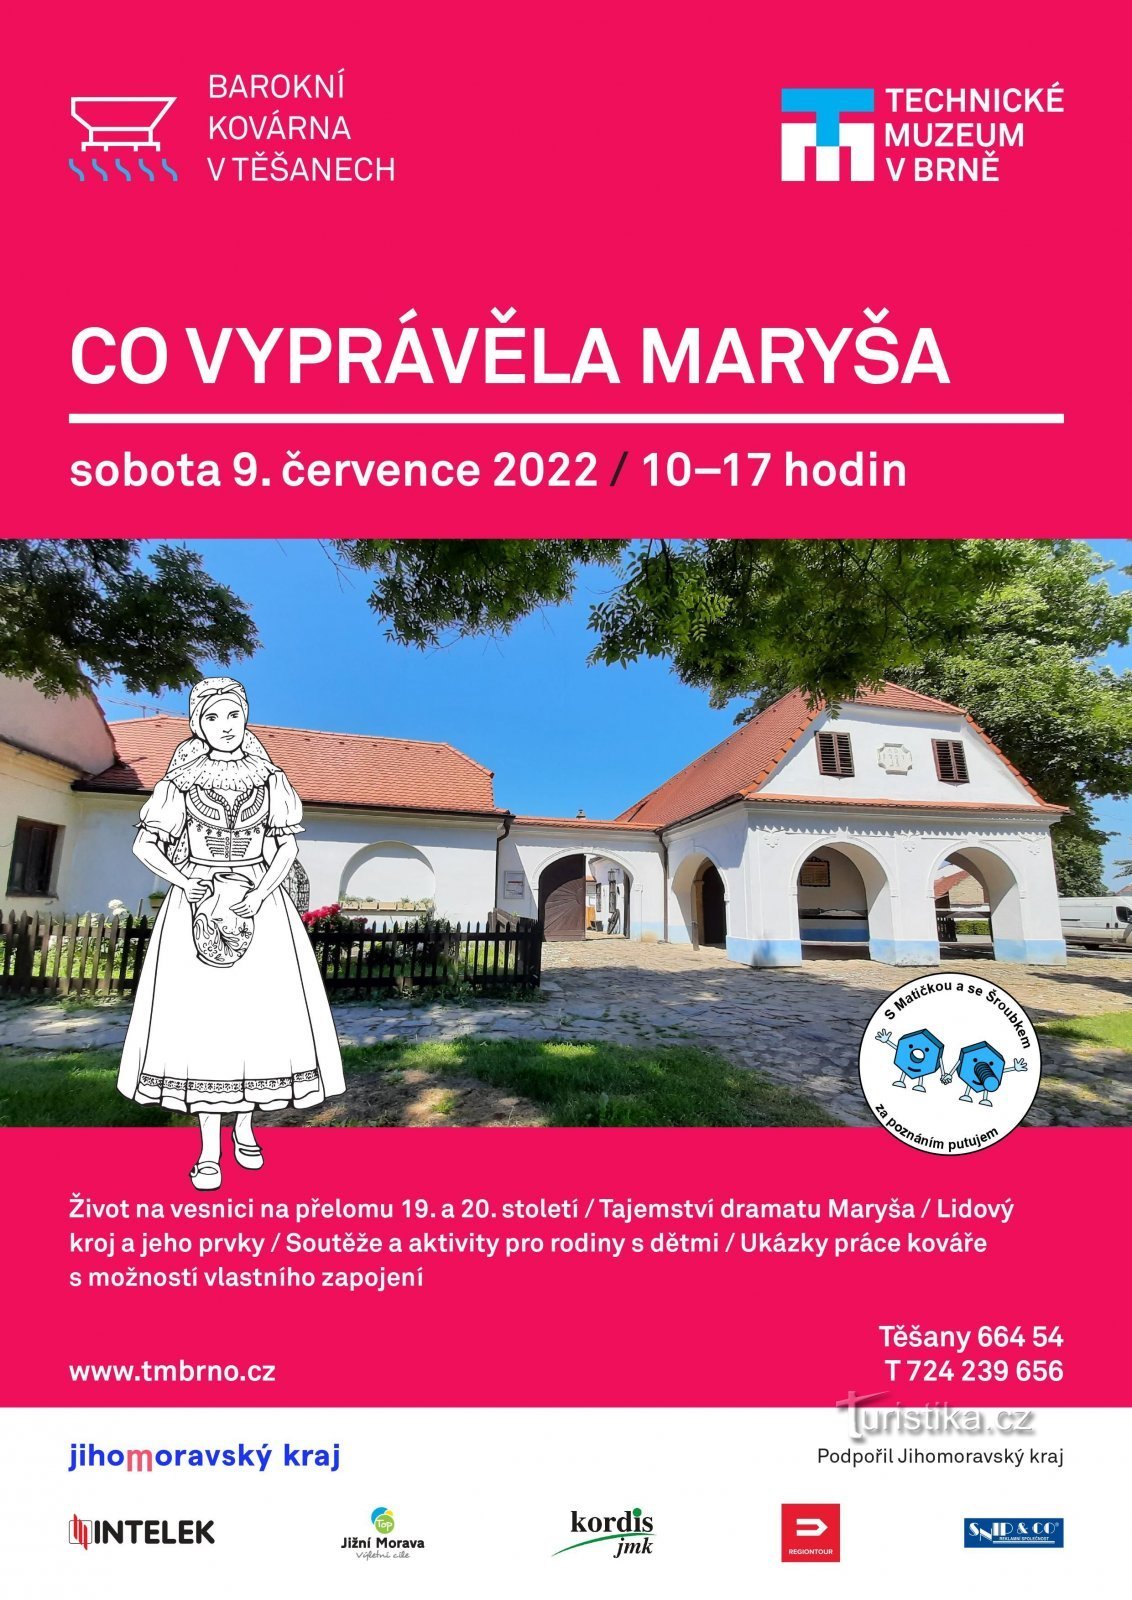 Was Maryša erzählte - viel Spaß und Lernen mit Kindern in der Barockschmiede in Těšany